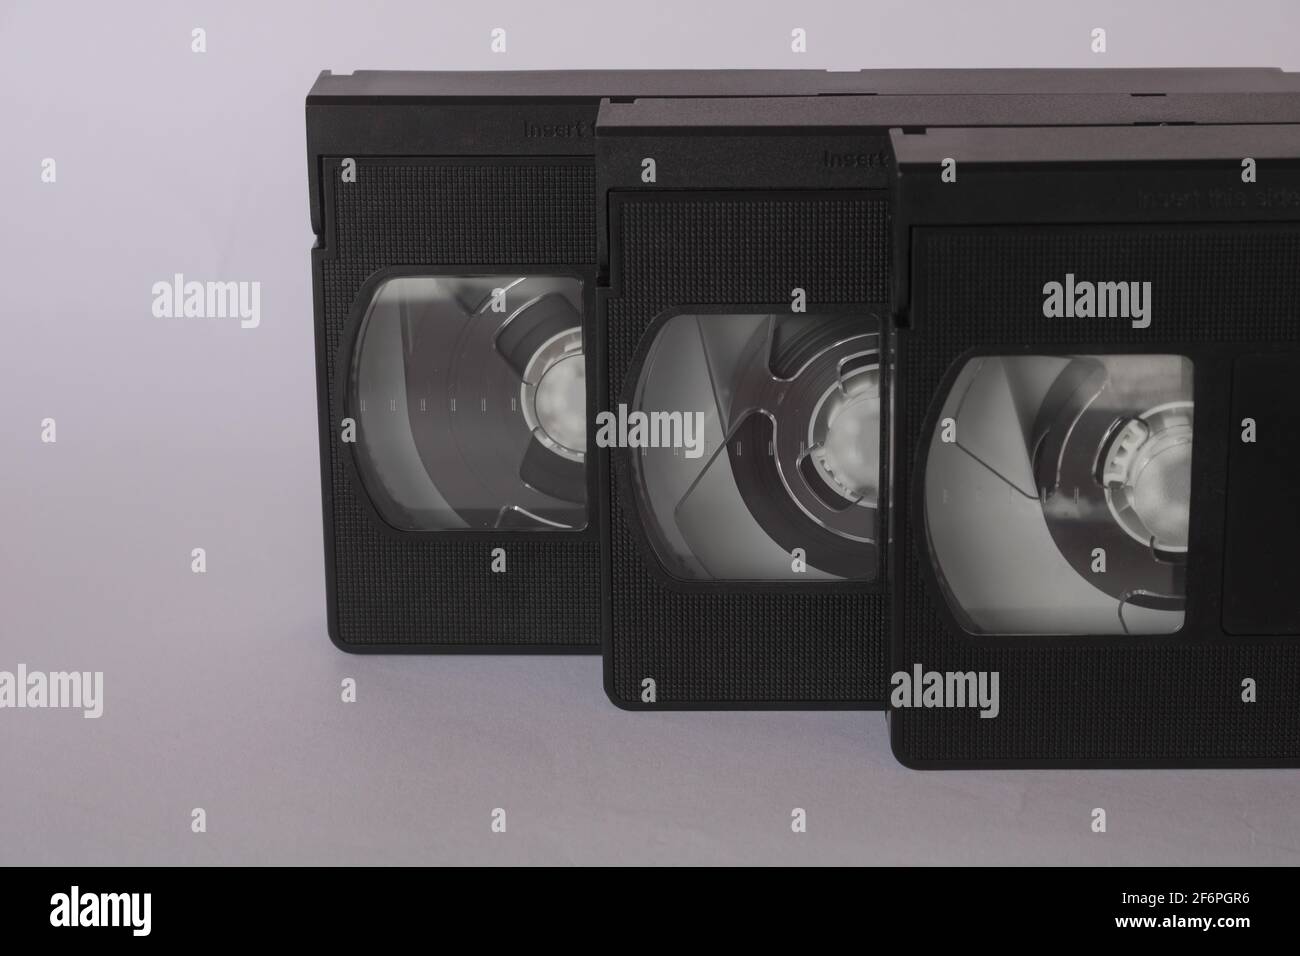 Tre nastri video VHS, cassetta, isolati su sfondo bianco. Vintage, retro Concept con nastri utilizzati in passato per riprodurre e registrare film e filmati Foto Stock